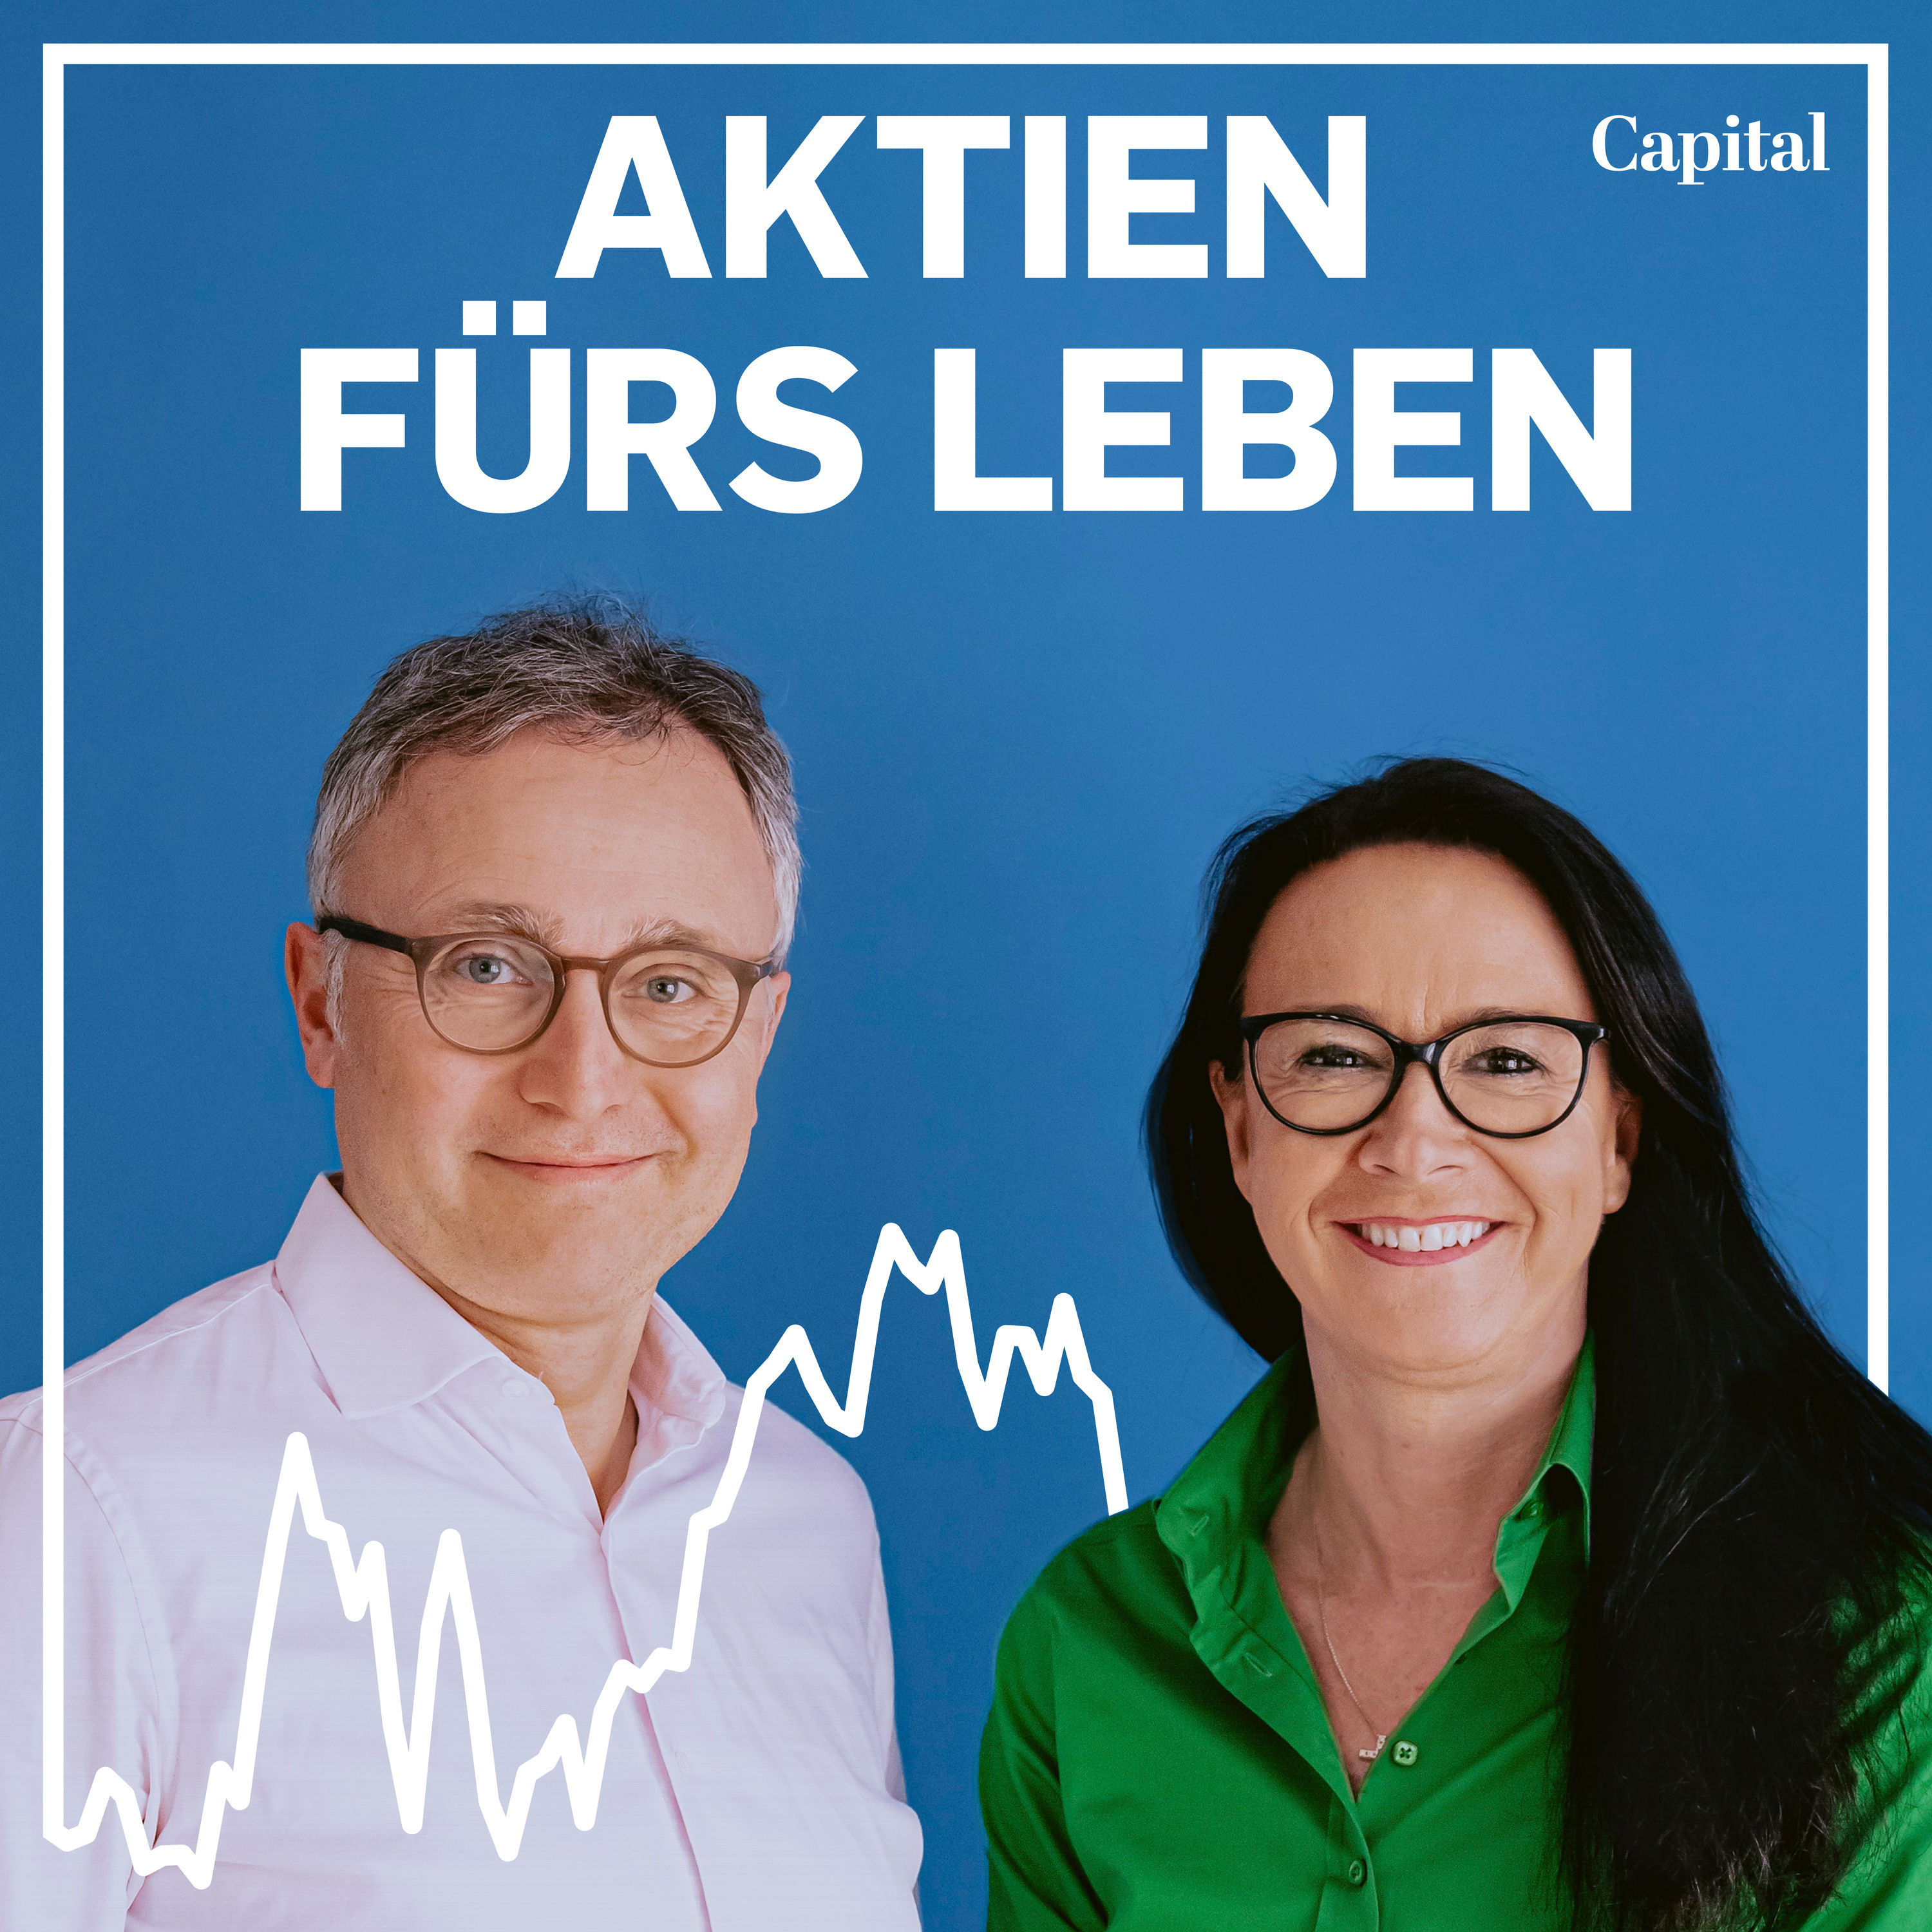 Aktien fürs Leben Podcast von Capital kostenlos hören